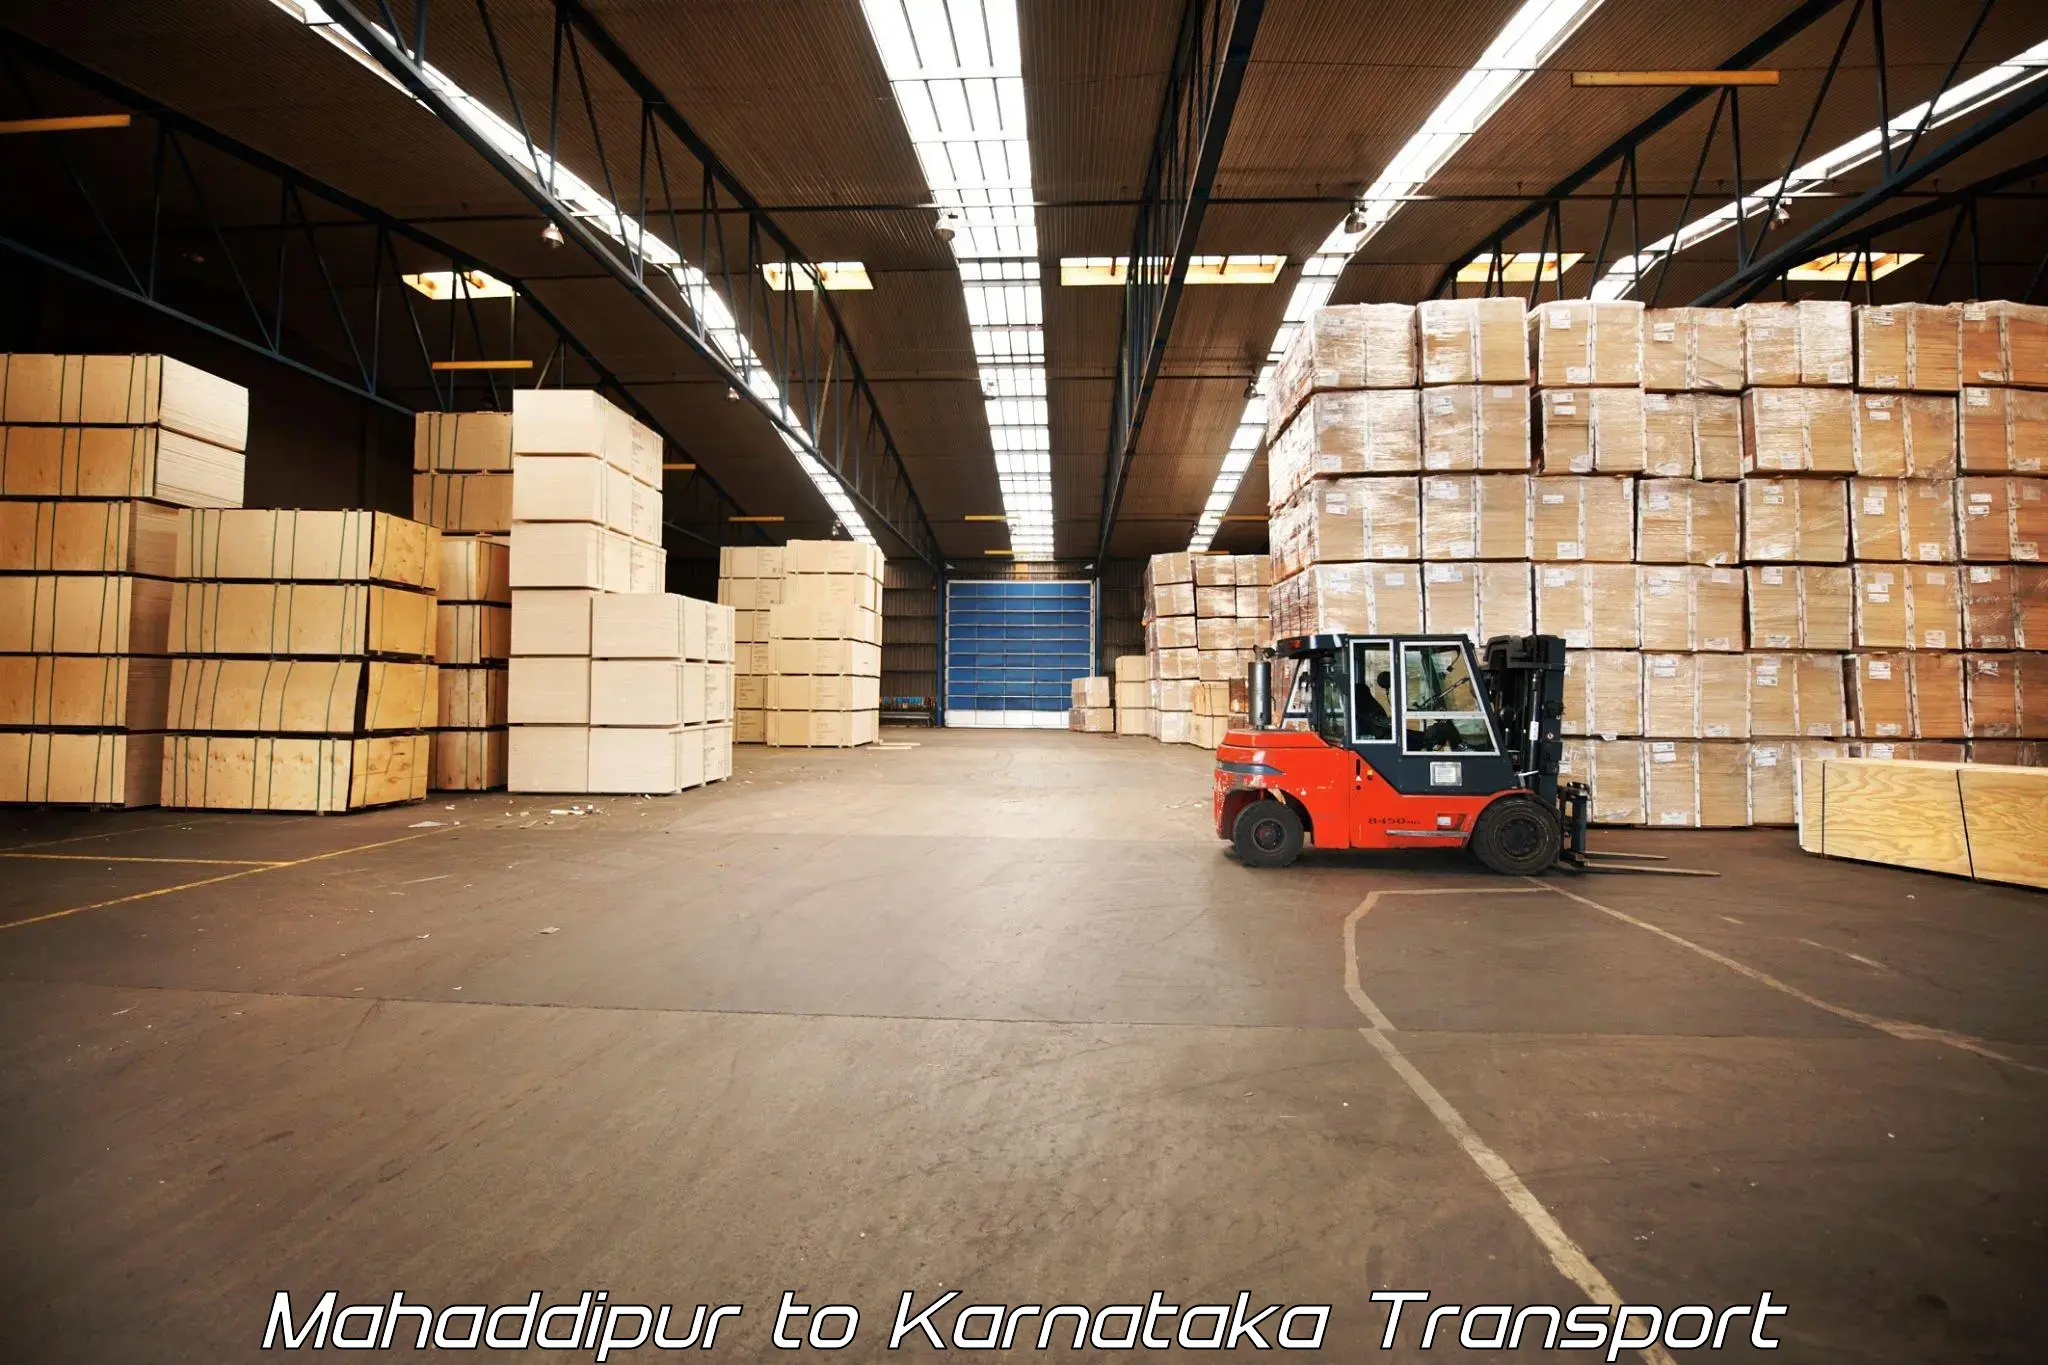 Online transport booking Mahaddipur to Karnataka